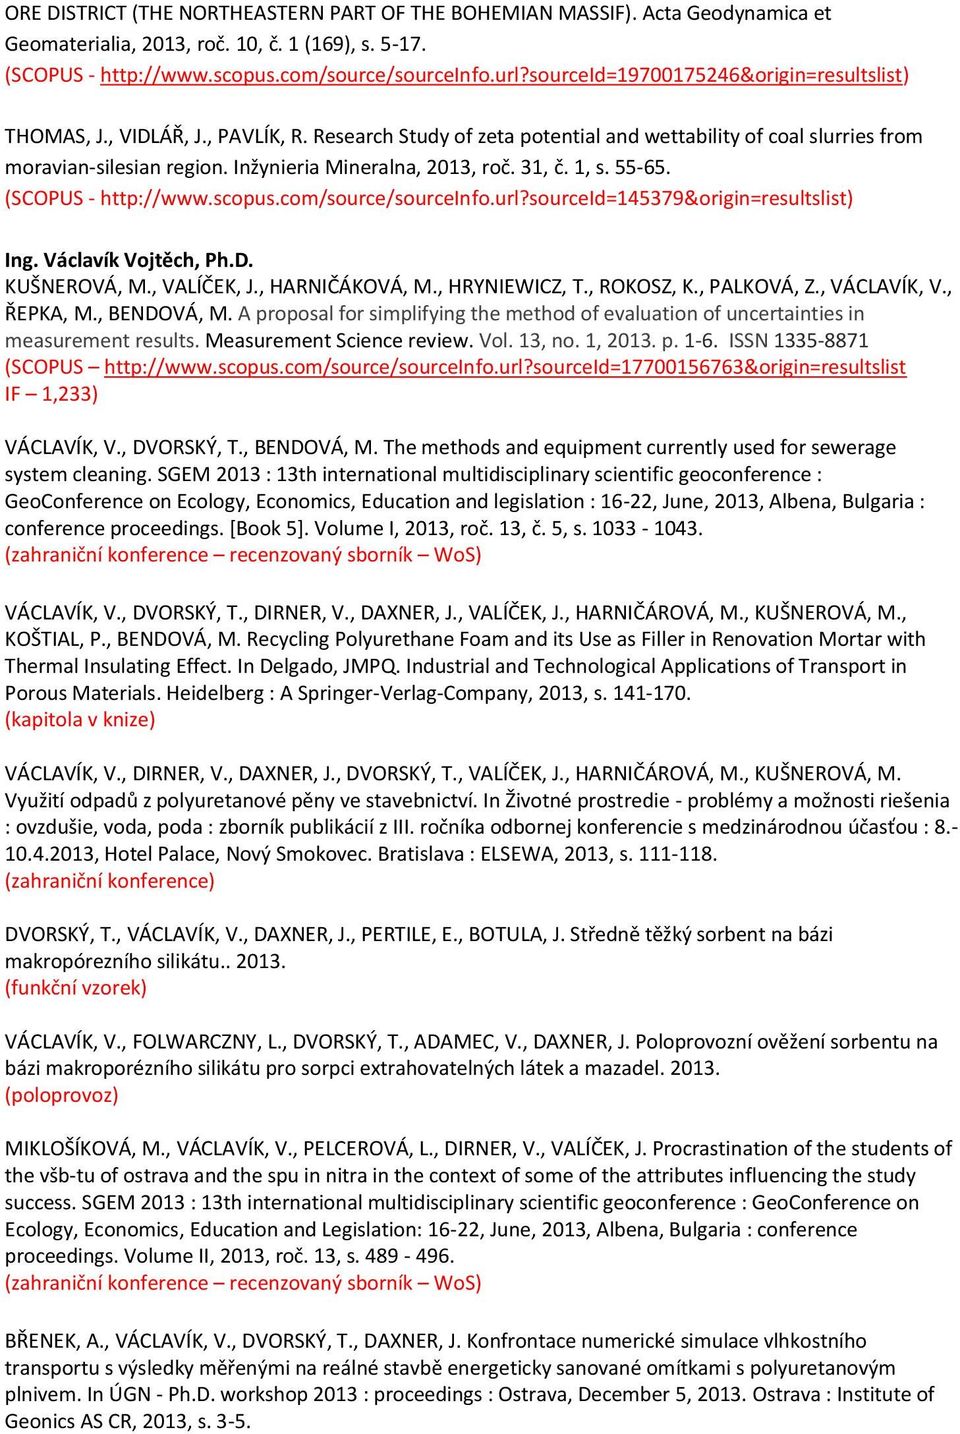 Inžynieria Mineralna, 2013, roč. 31, č. 1, s. 55-65. (SCOPUS - http://www.scopus.com/source/sourceinfo.url?sourceid=145379&origin=resultslist) Ing. Václavík Vojtěch, Ph.D. KUŠNEROVÁ, M., VALÍČEK, J.